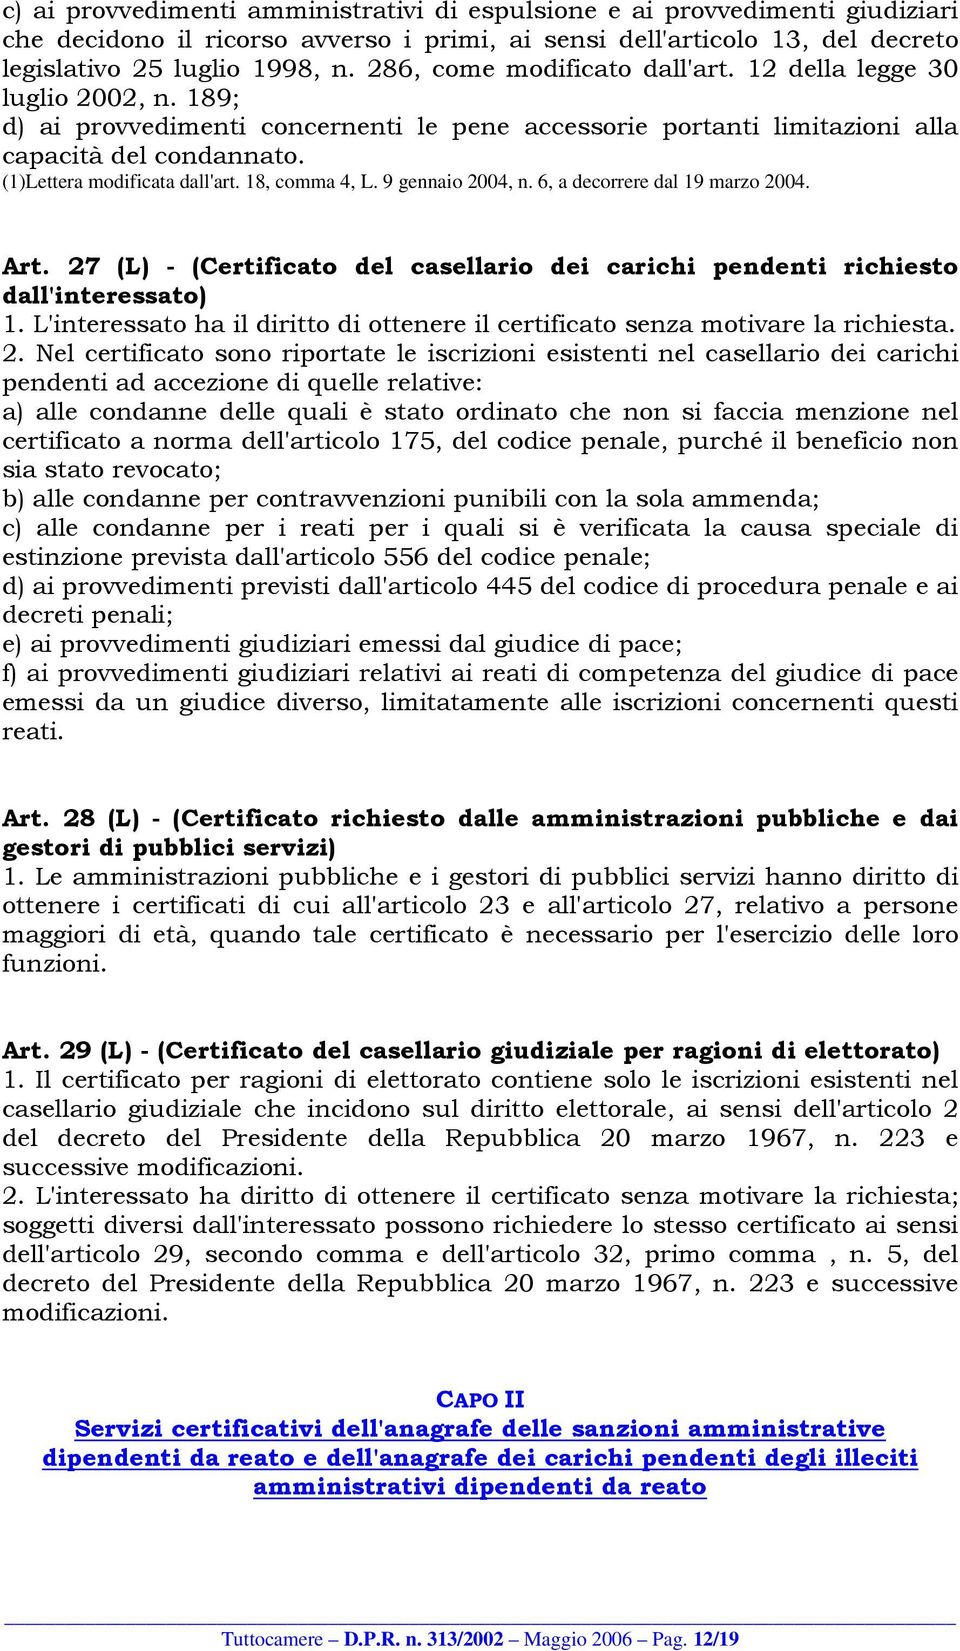 (1)Lettera modificata dall'art. 18, comma 4, L. 9 gennaio 2004, n. 6, a decorrere dal 19 marzo 2004. Art. 27 (L) - (Certificato del casellario dei carichi pendenti richiesto dall'interessato) 1.